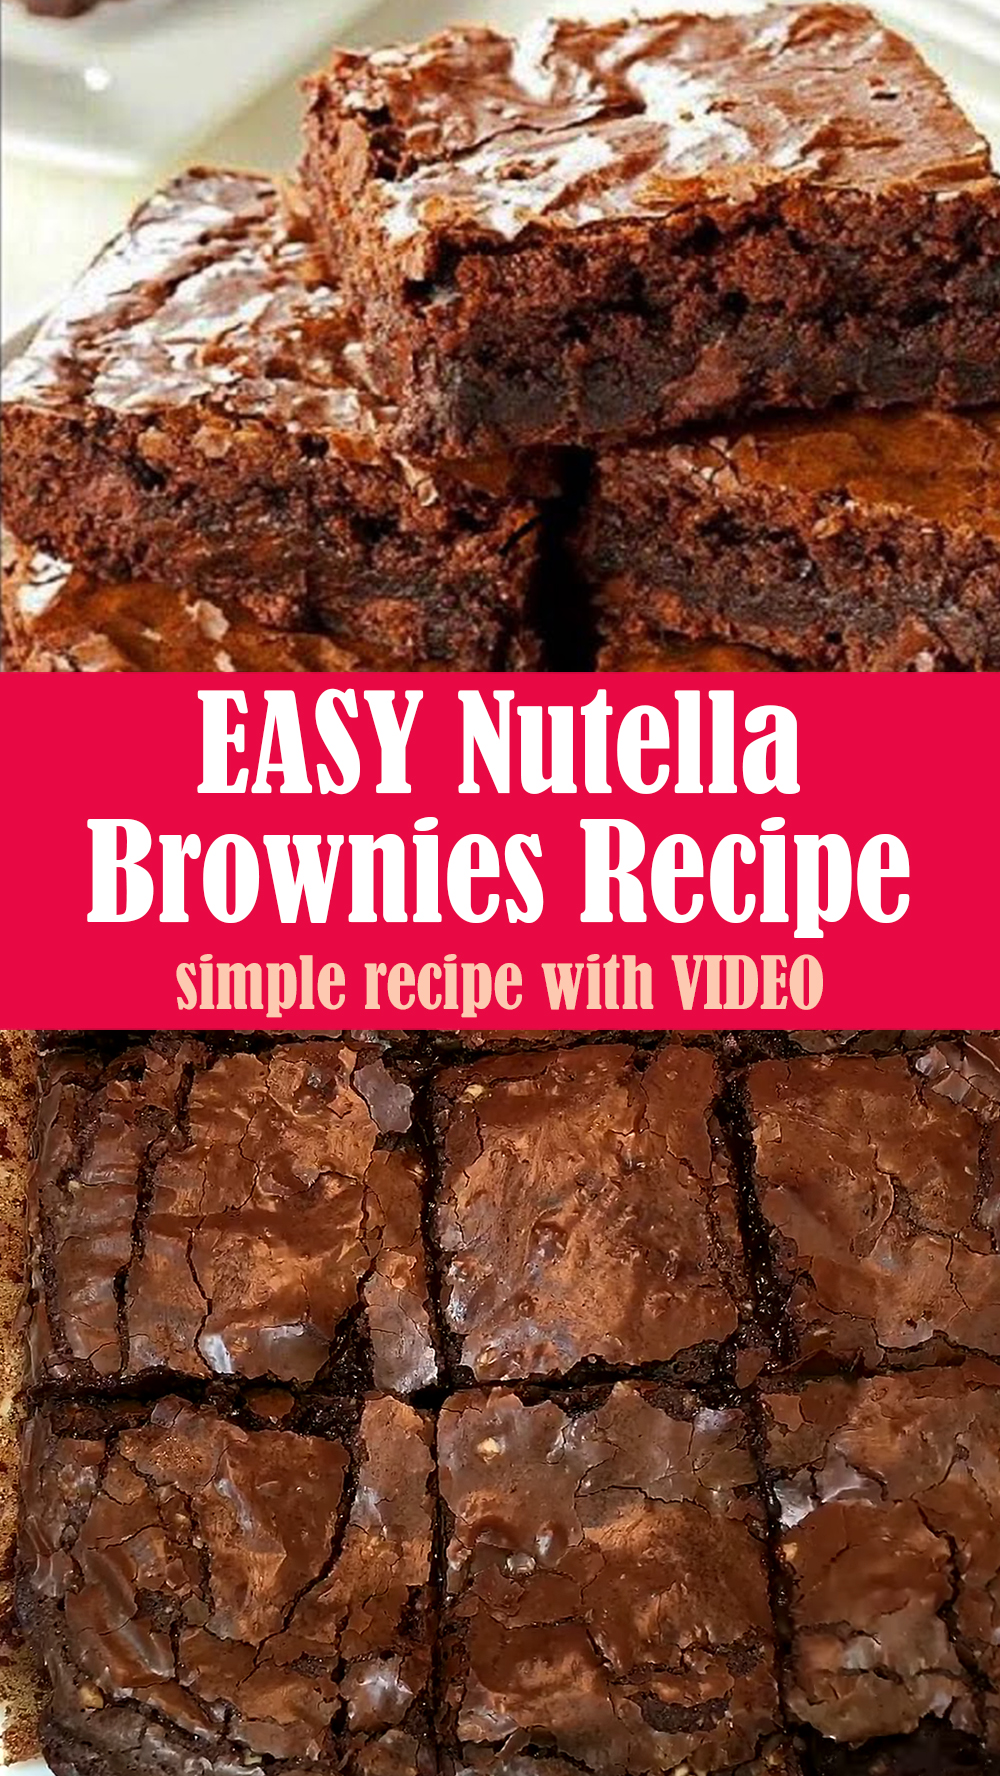 EASY Nutella Brownies Recipe